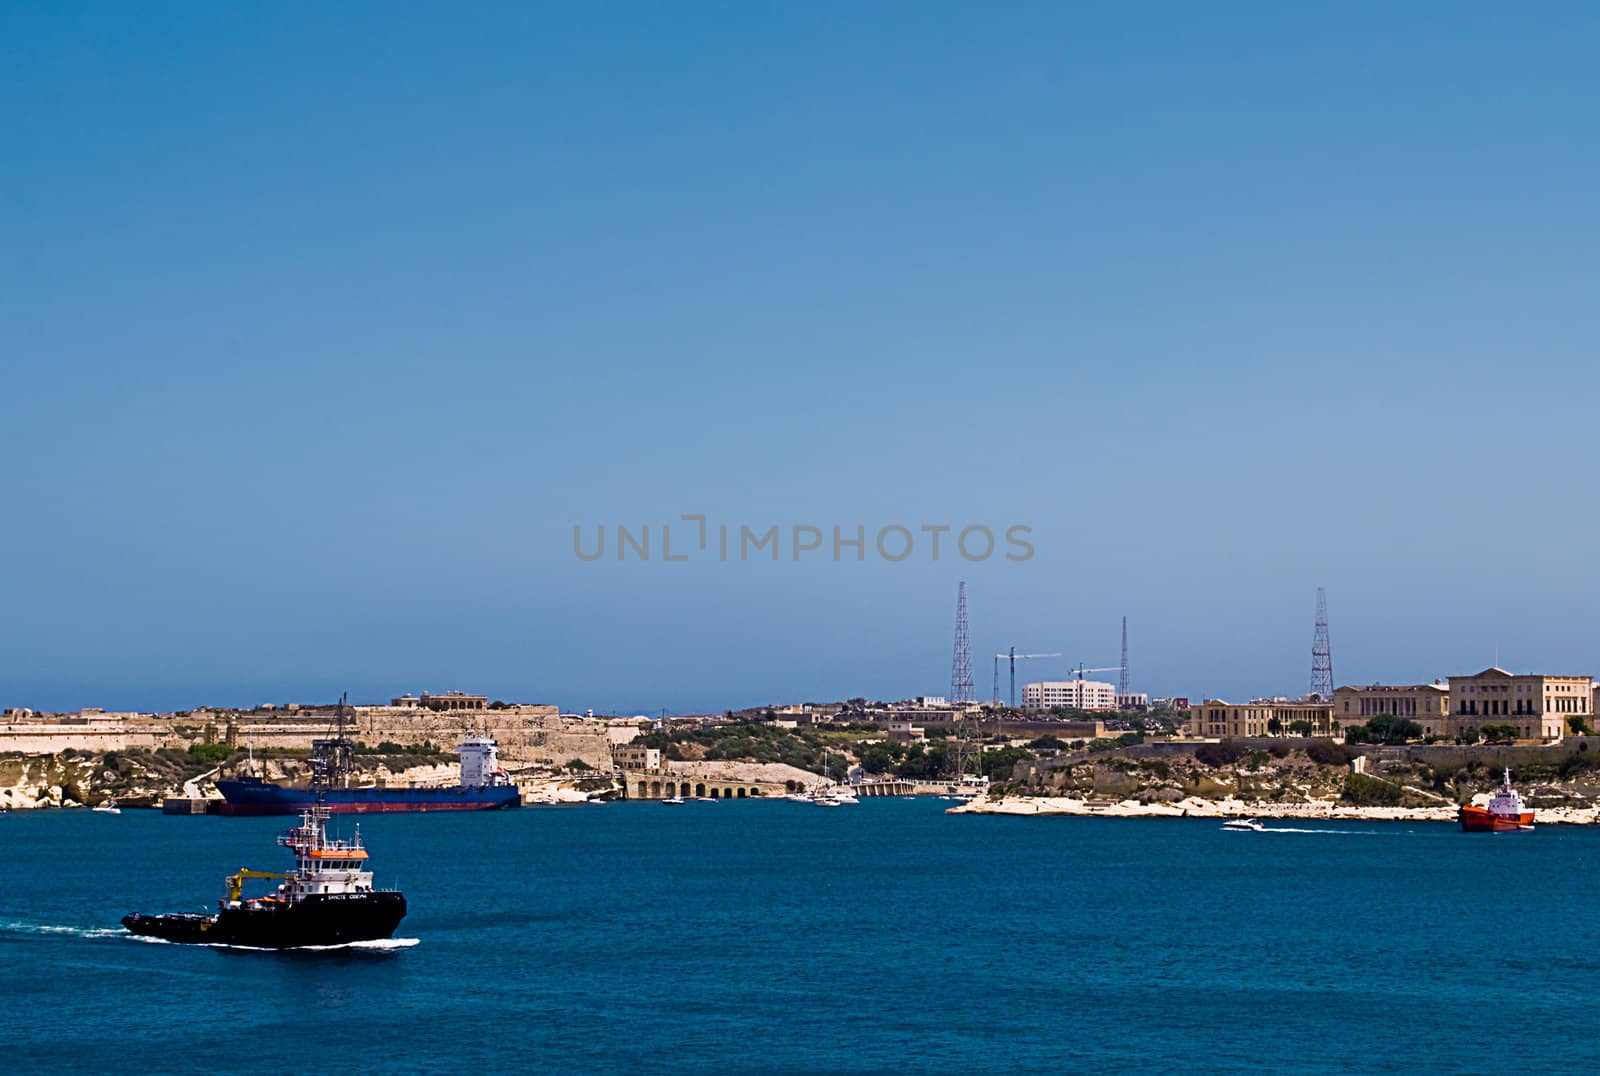 A cityscape view of Valetta in Malta.